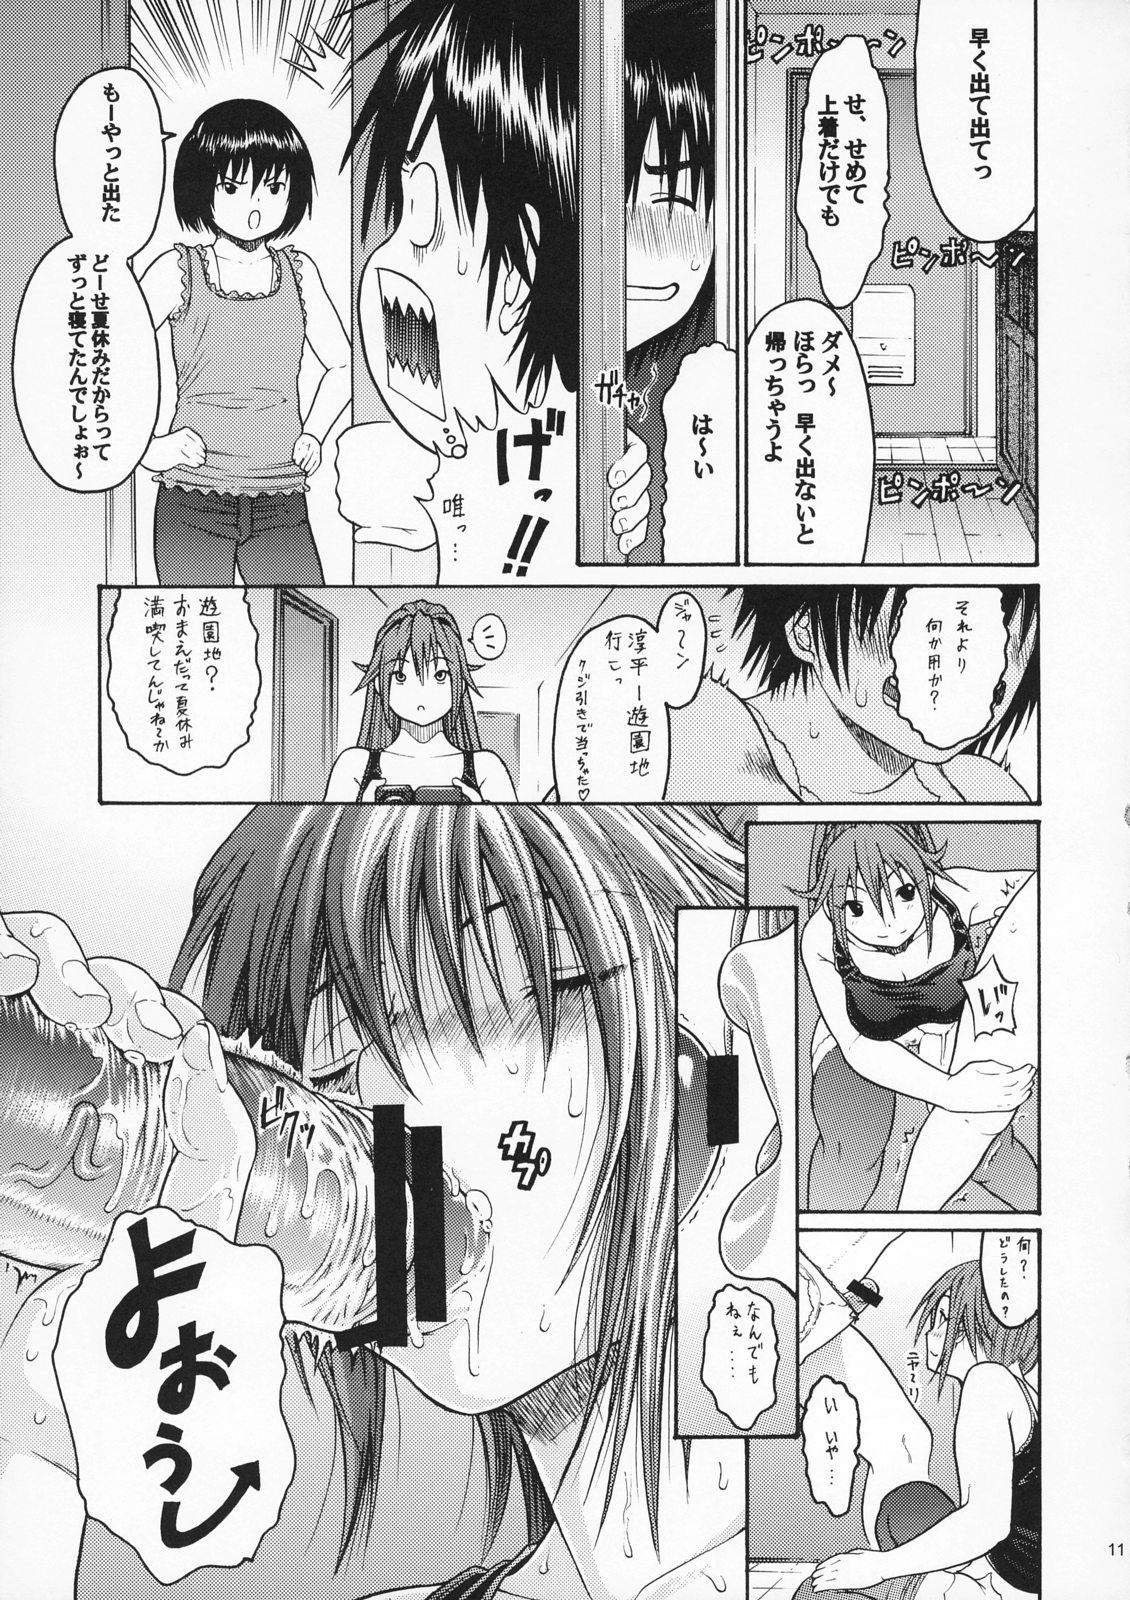 Game Haru Ichigo Vol. 5 - Spring Strawberry Vol. 5 - Ichigo 100 Clothed - Page 8